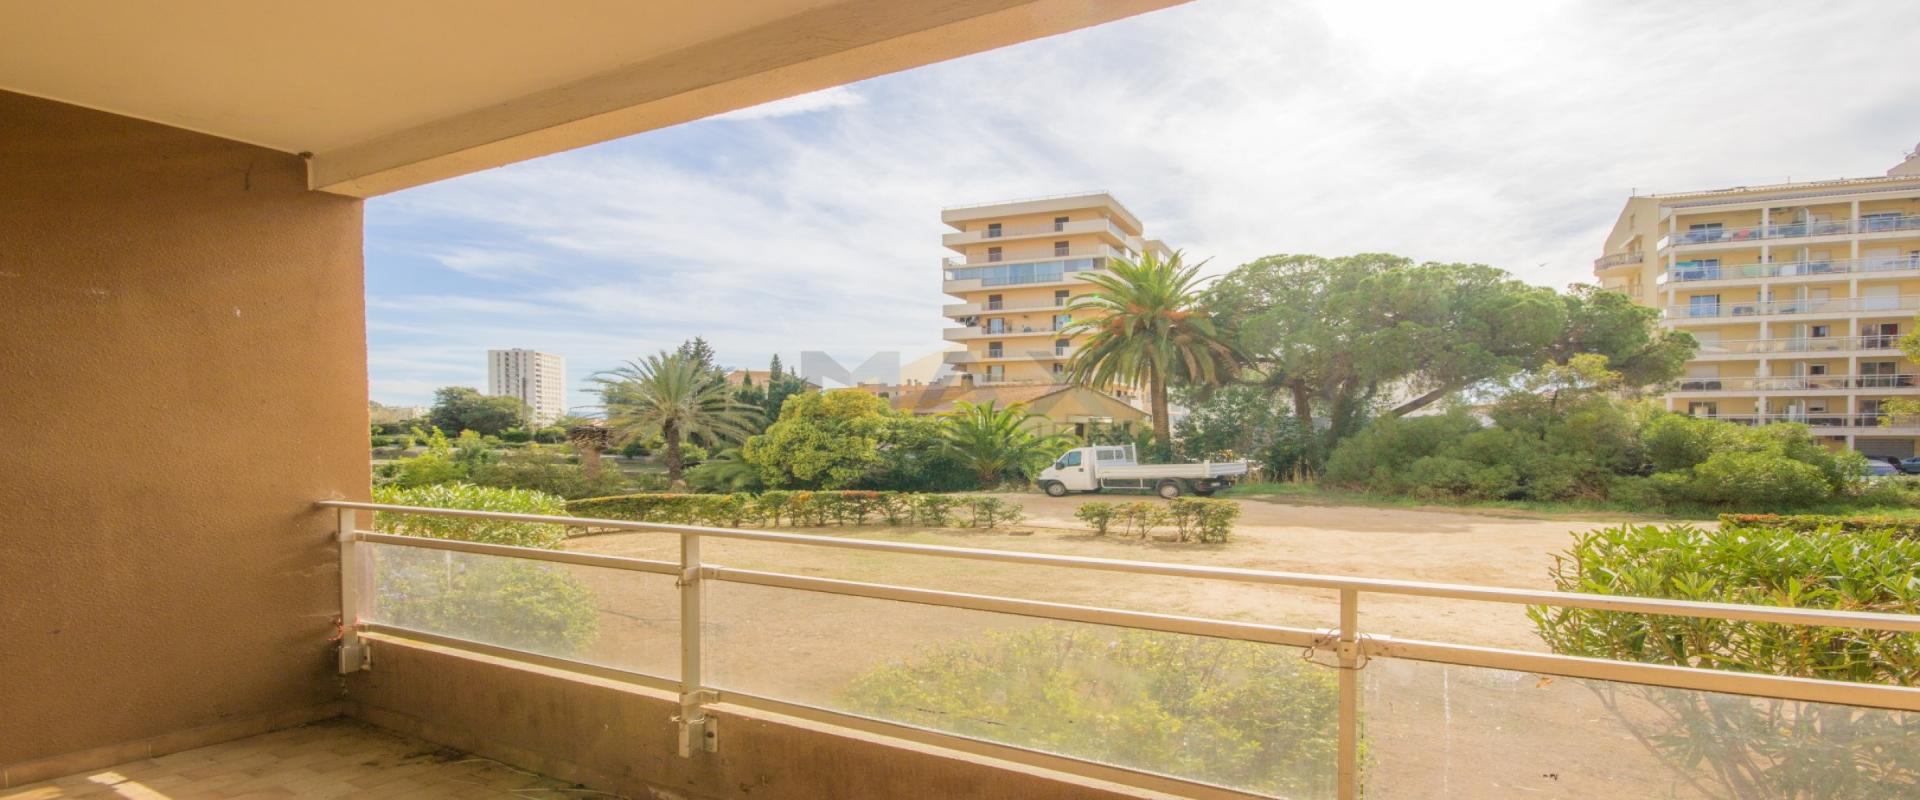 En Corse à Ajaccio, a proximité du centre ville, MAX IMMOBILIER vous propose un F4 de  95m² avec une terrasse de 9m².